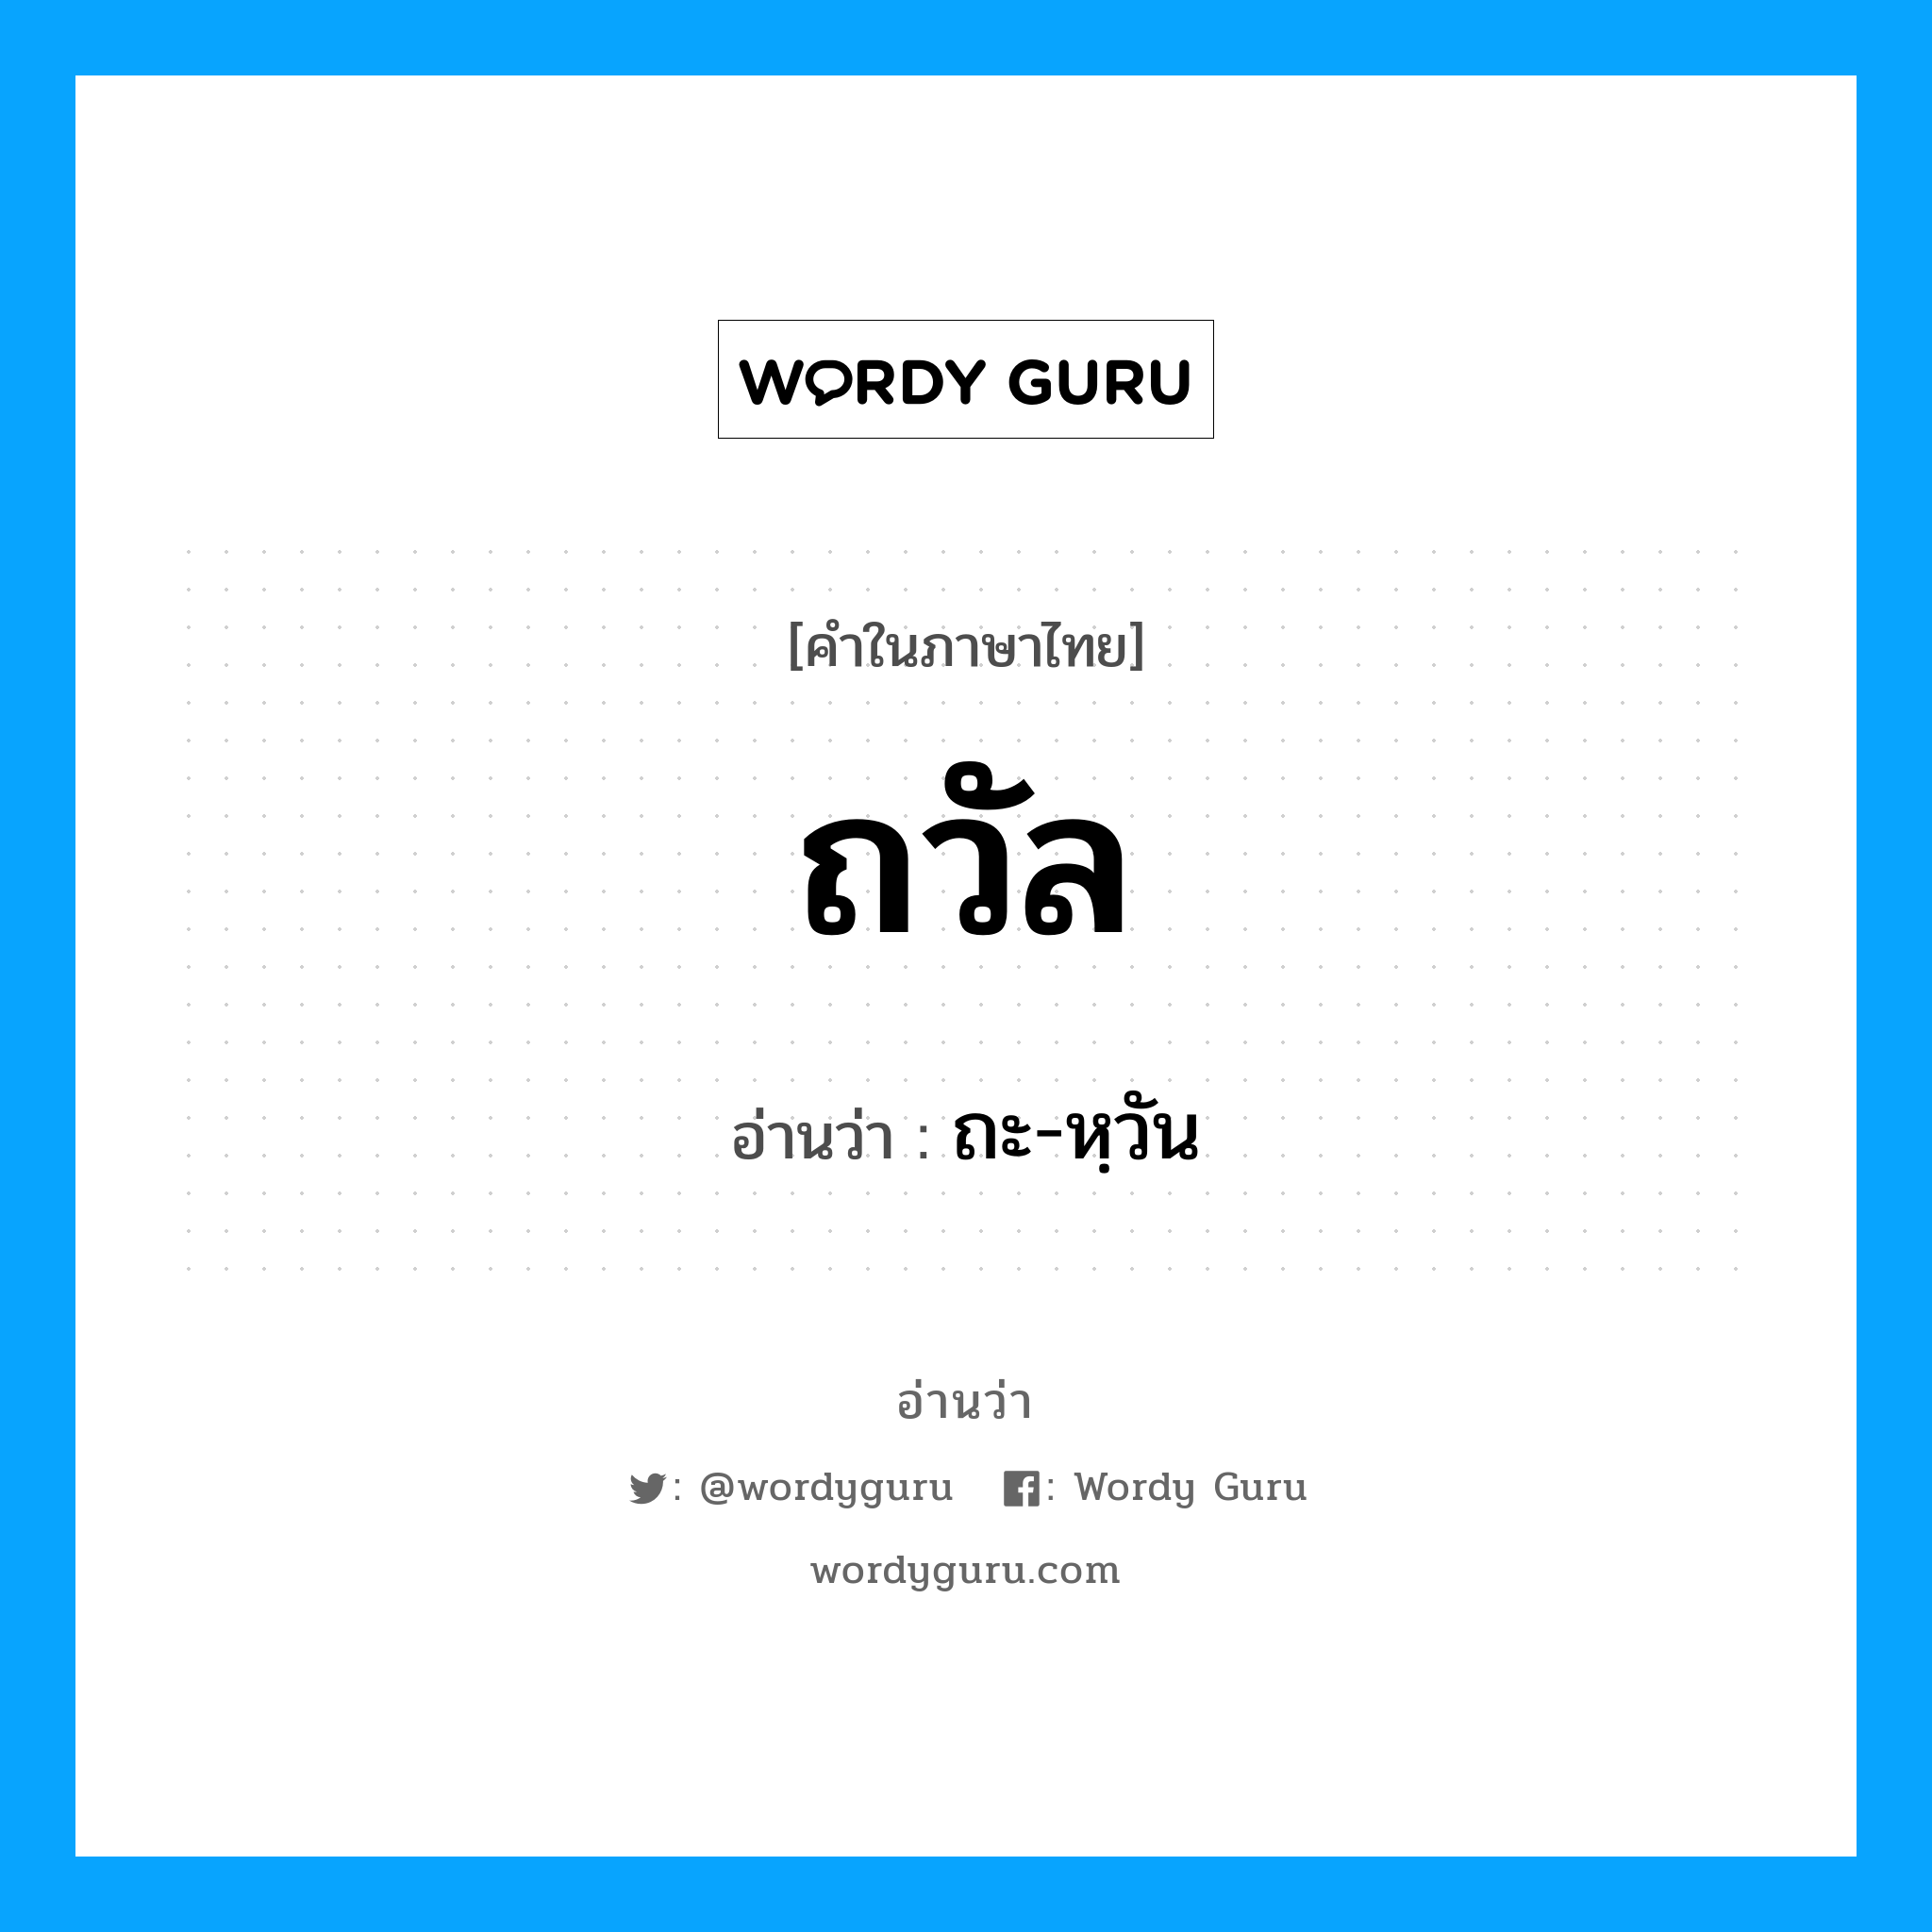 ถะ-หฺวัน เป็นคำอ่านของคำไหน?, คำในภาษาไทย ถะ-หฺวัน อ่านว่า ถวัล